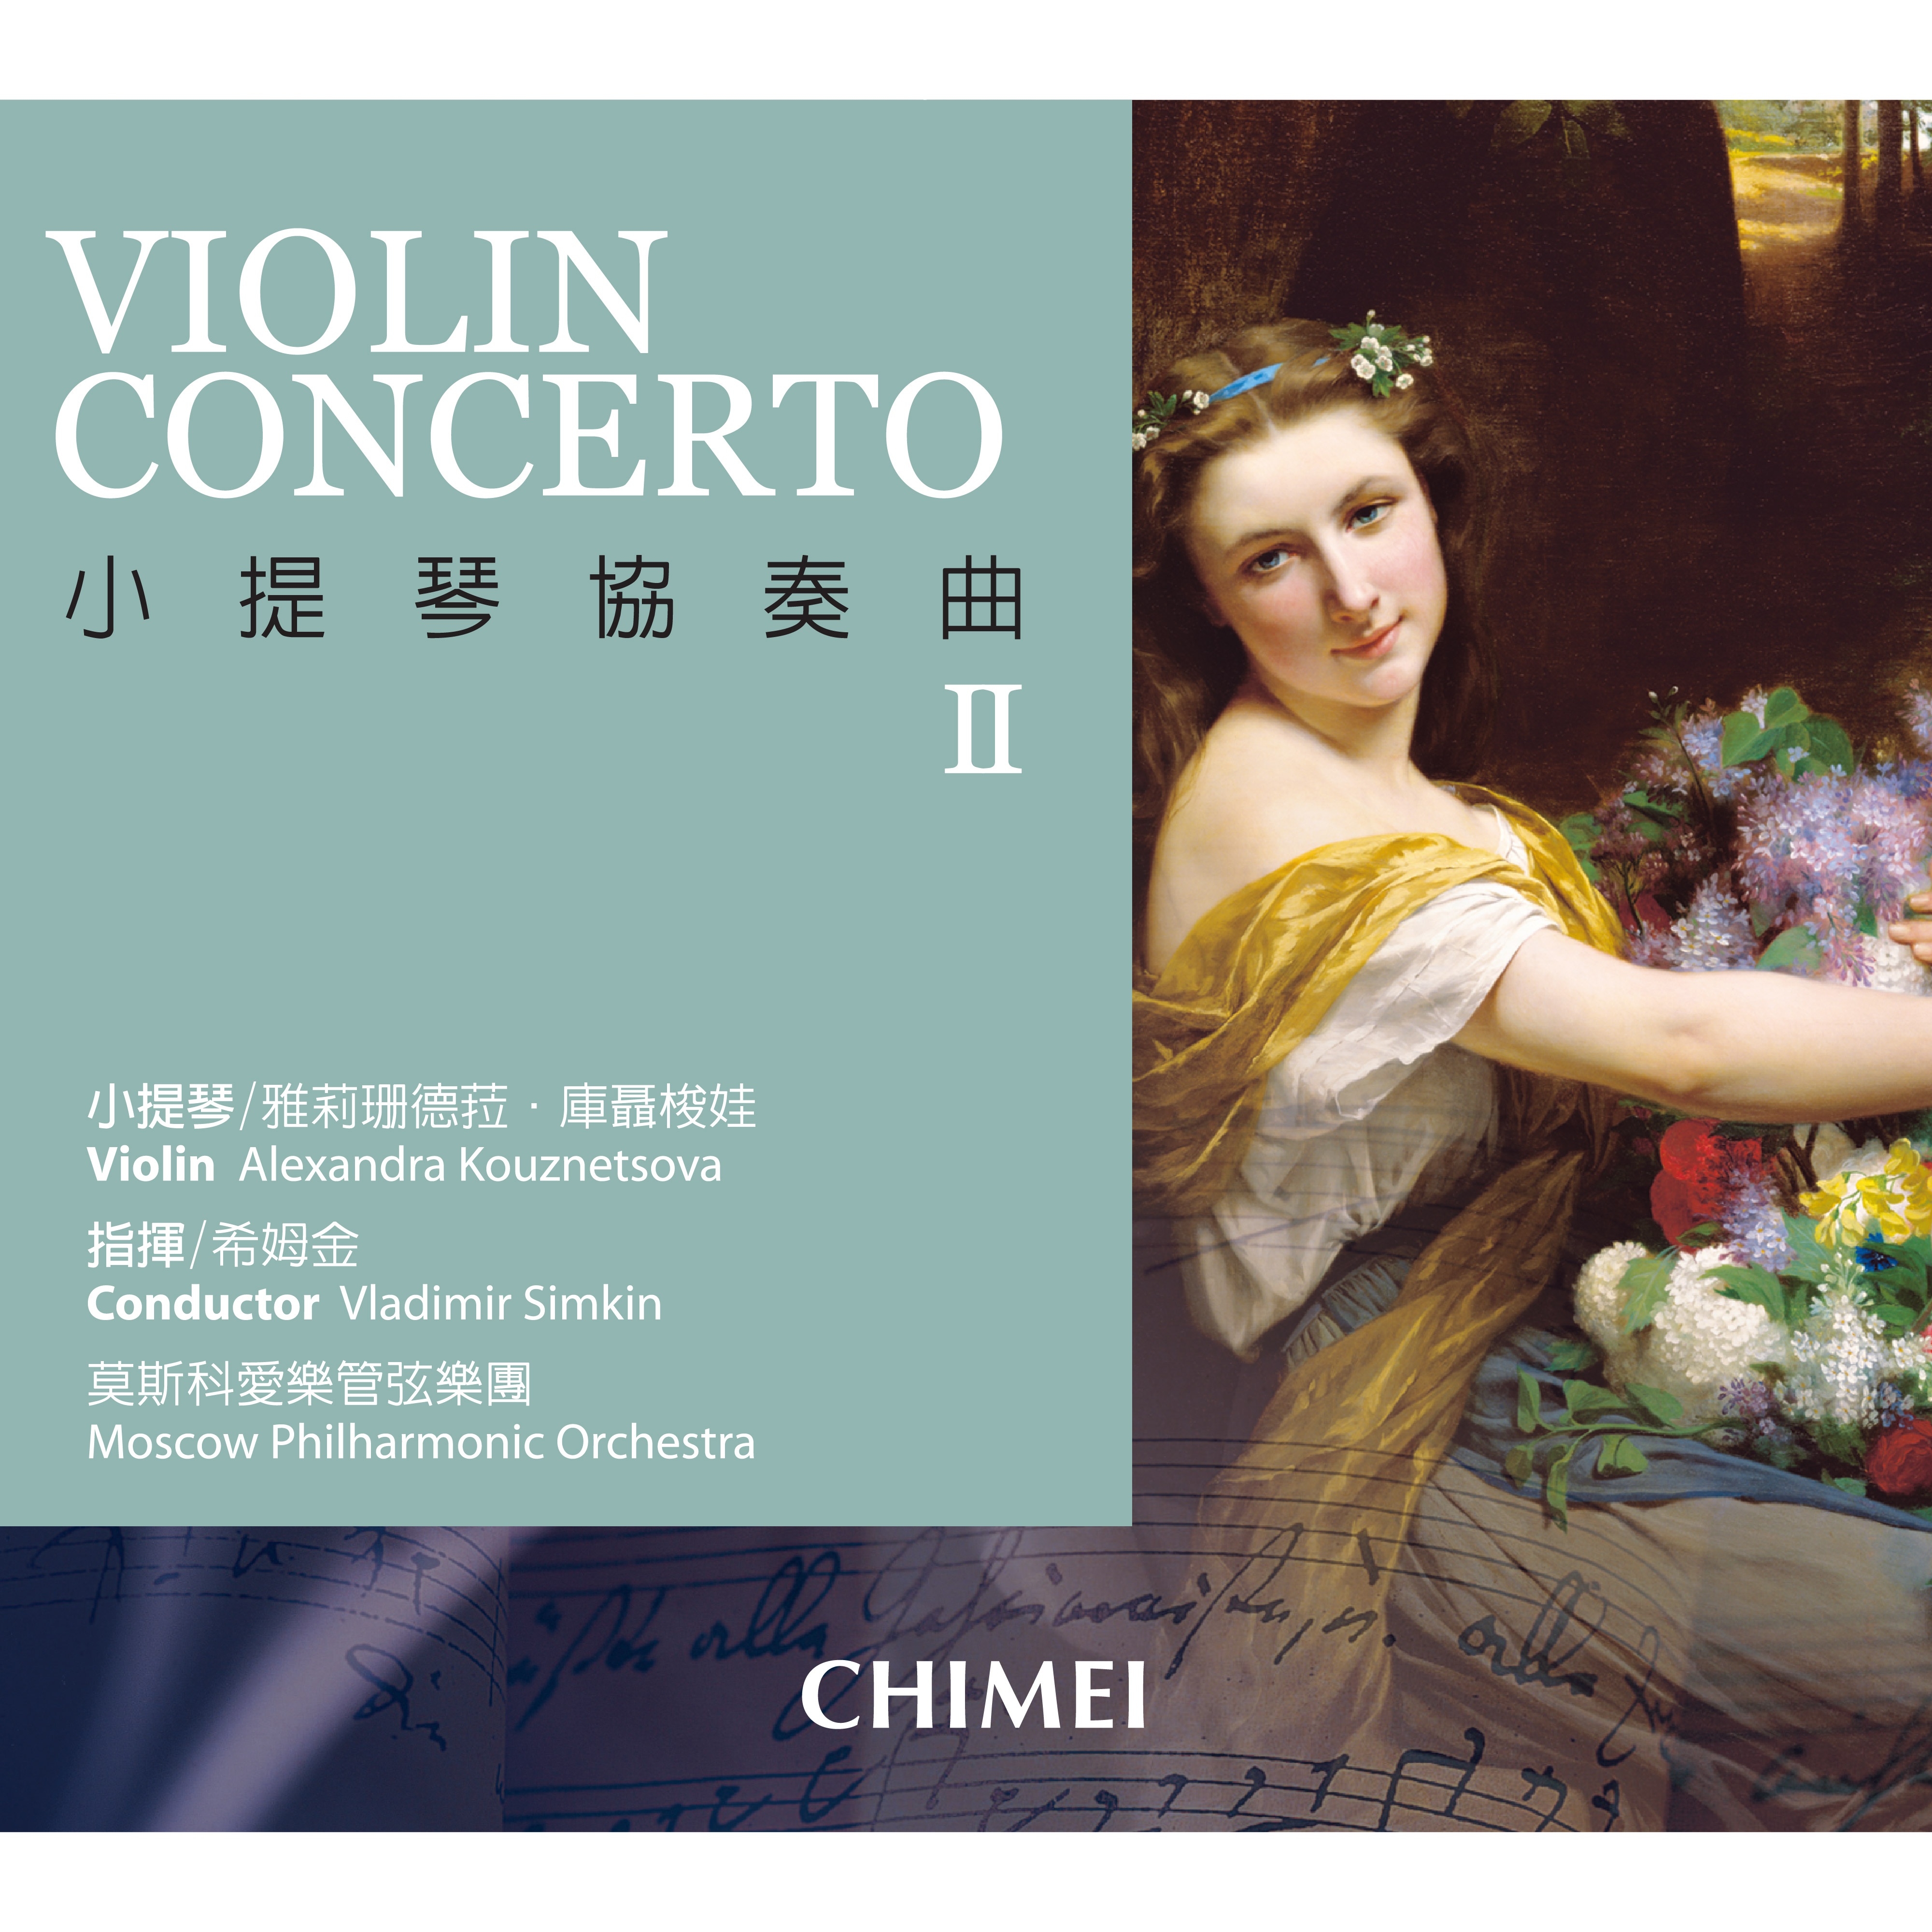 Mendelssohn: Violin Concerto in E Minor, Op. 64: I. Allegro molto appassionato